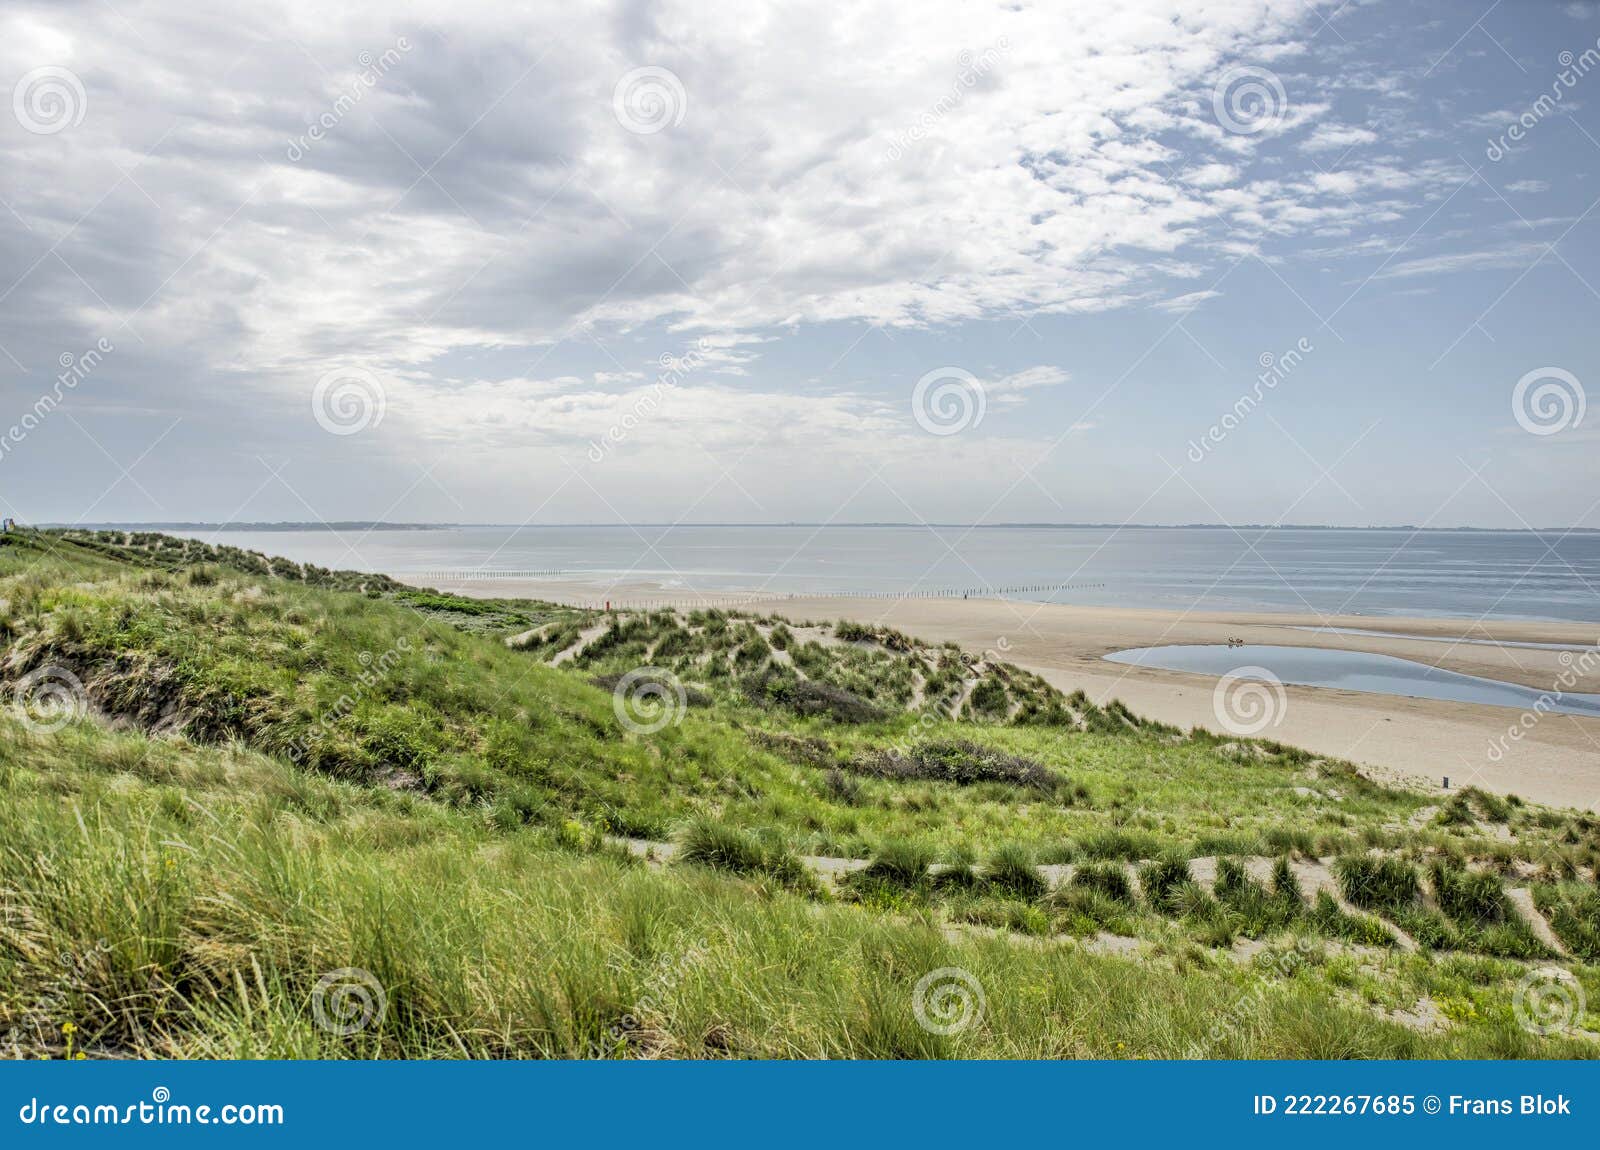 rotterdam maasvlakte beach